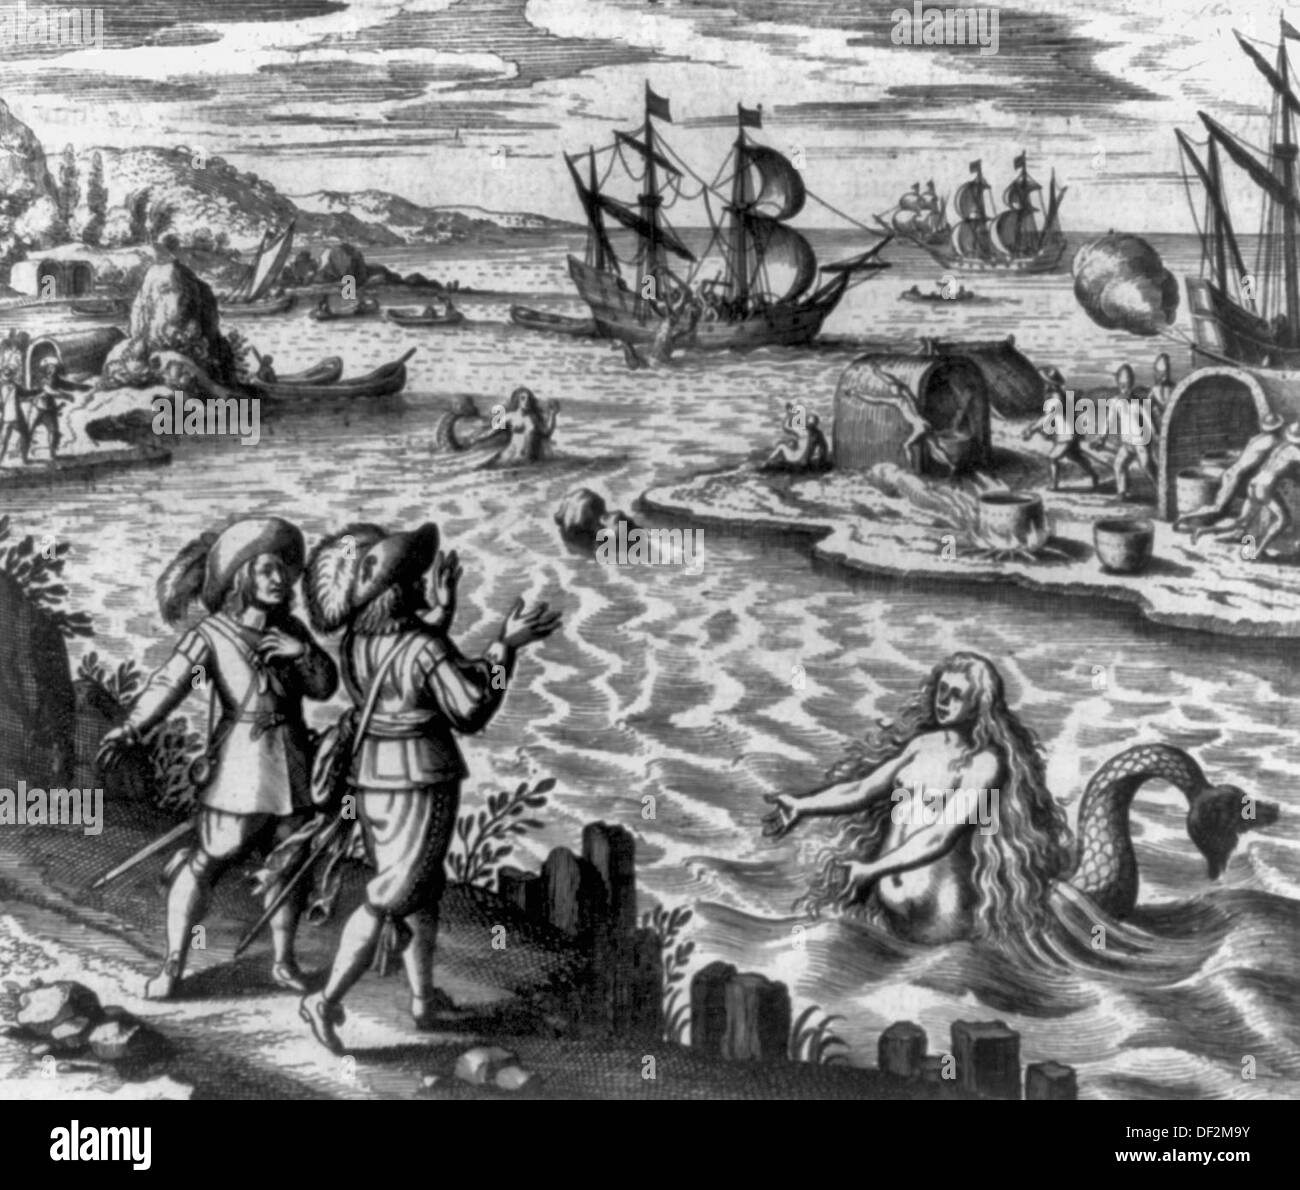 Deux sirènes, les hommes sur l'île, les navires et bateaux. Imaginer le nouveau monde, 1594 Banque D'Images